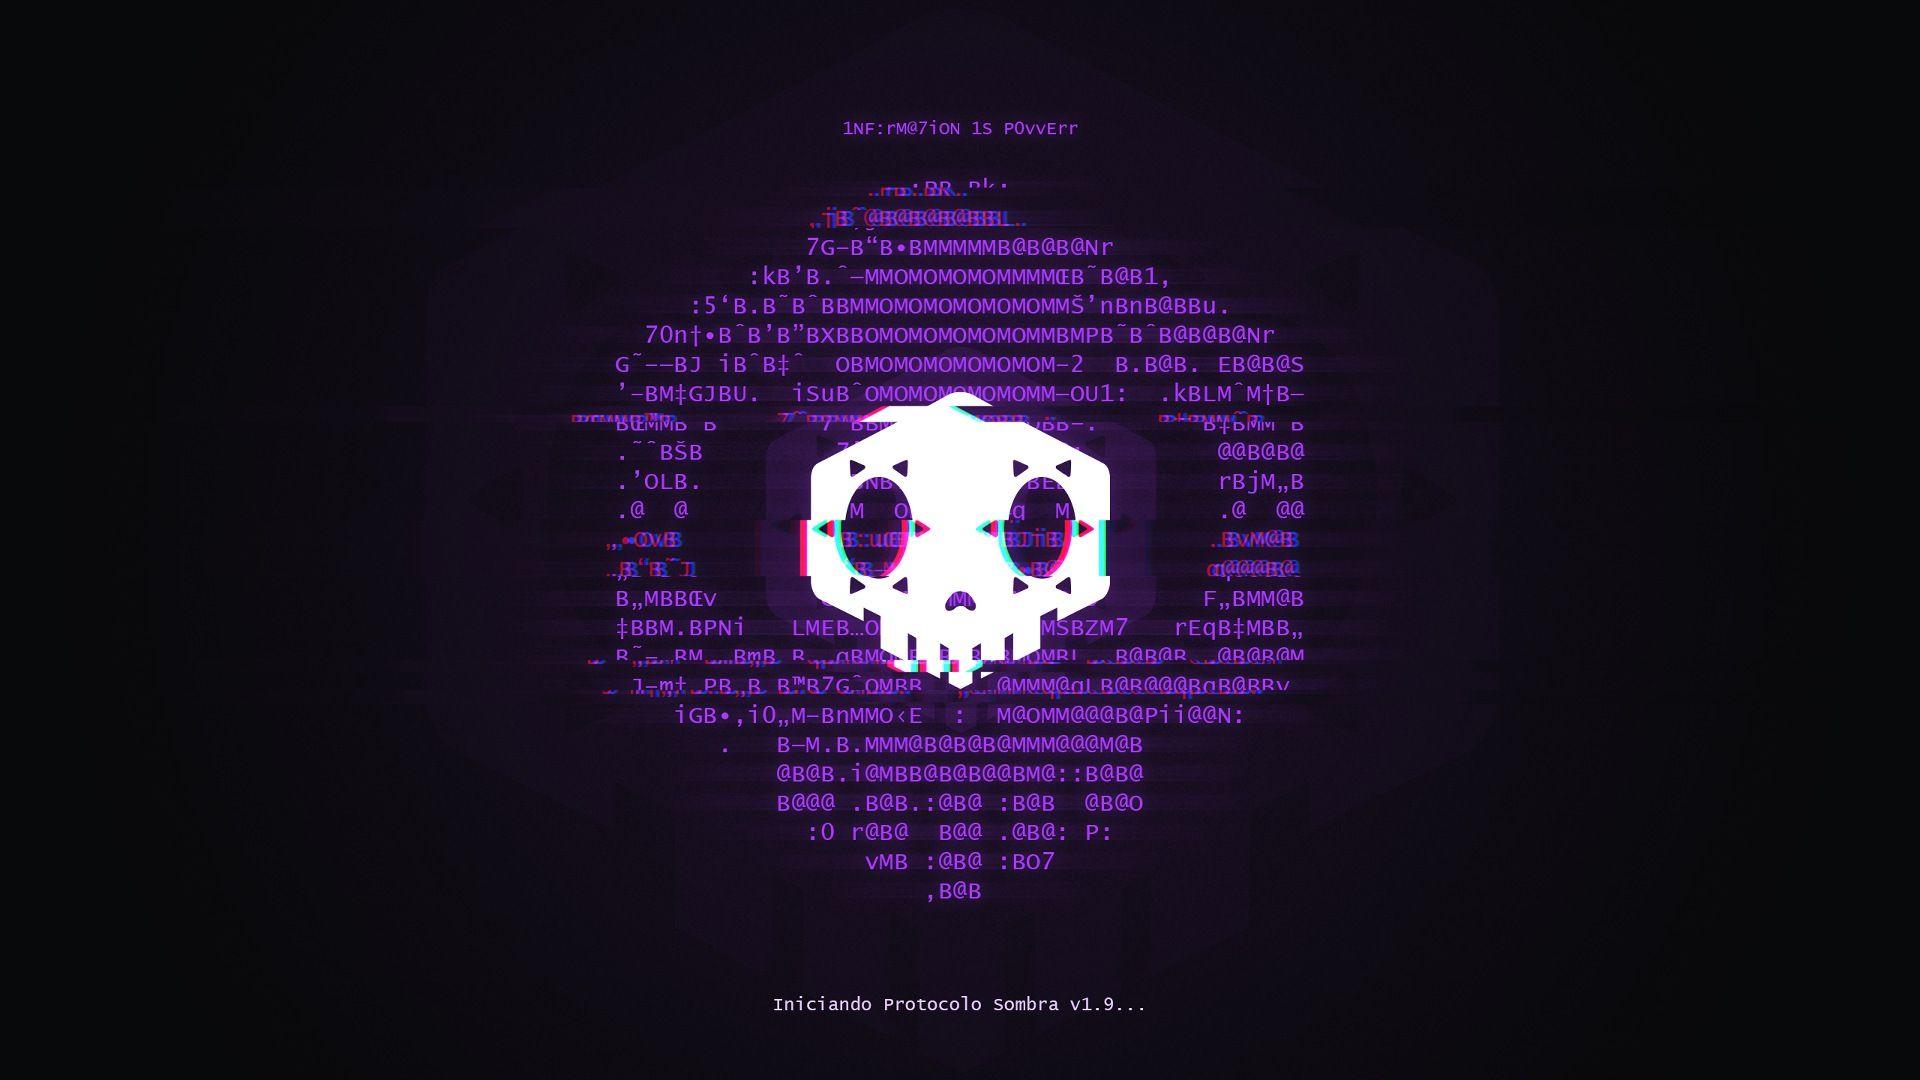 Overwatch Game Sombra Hacker Logo Wallpaper